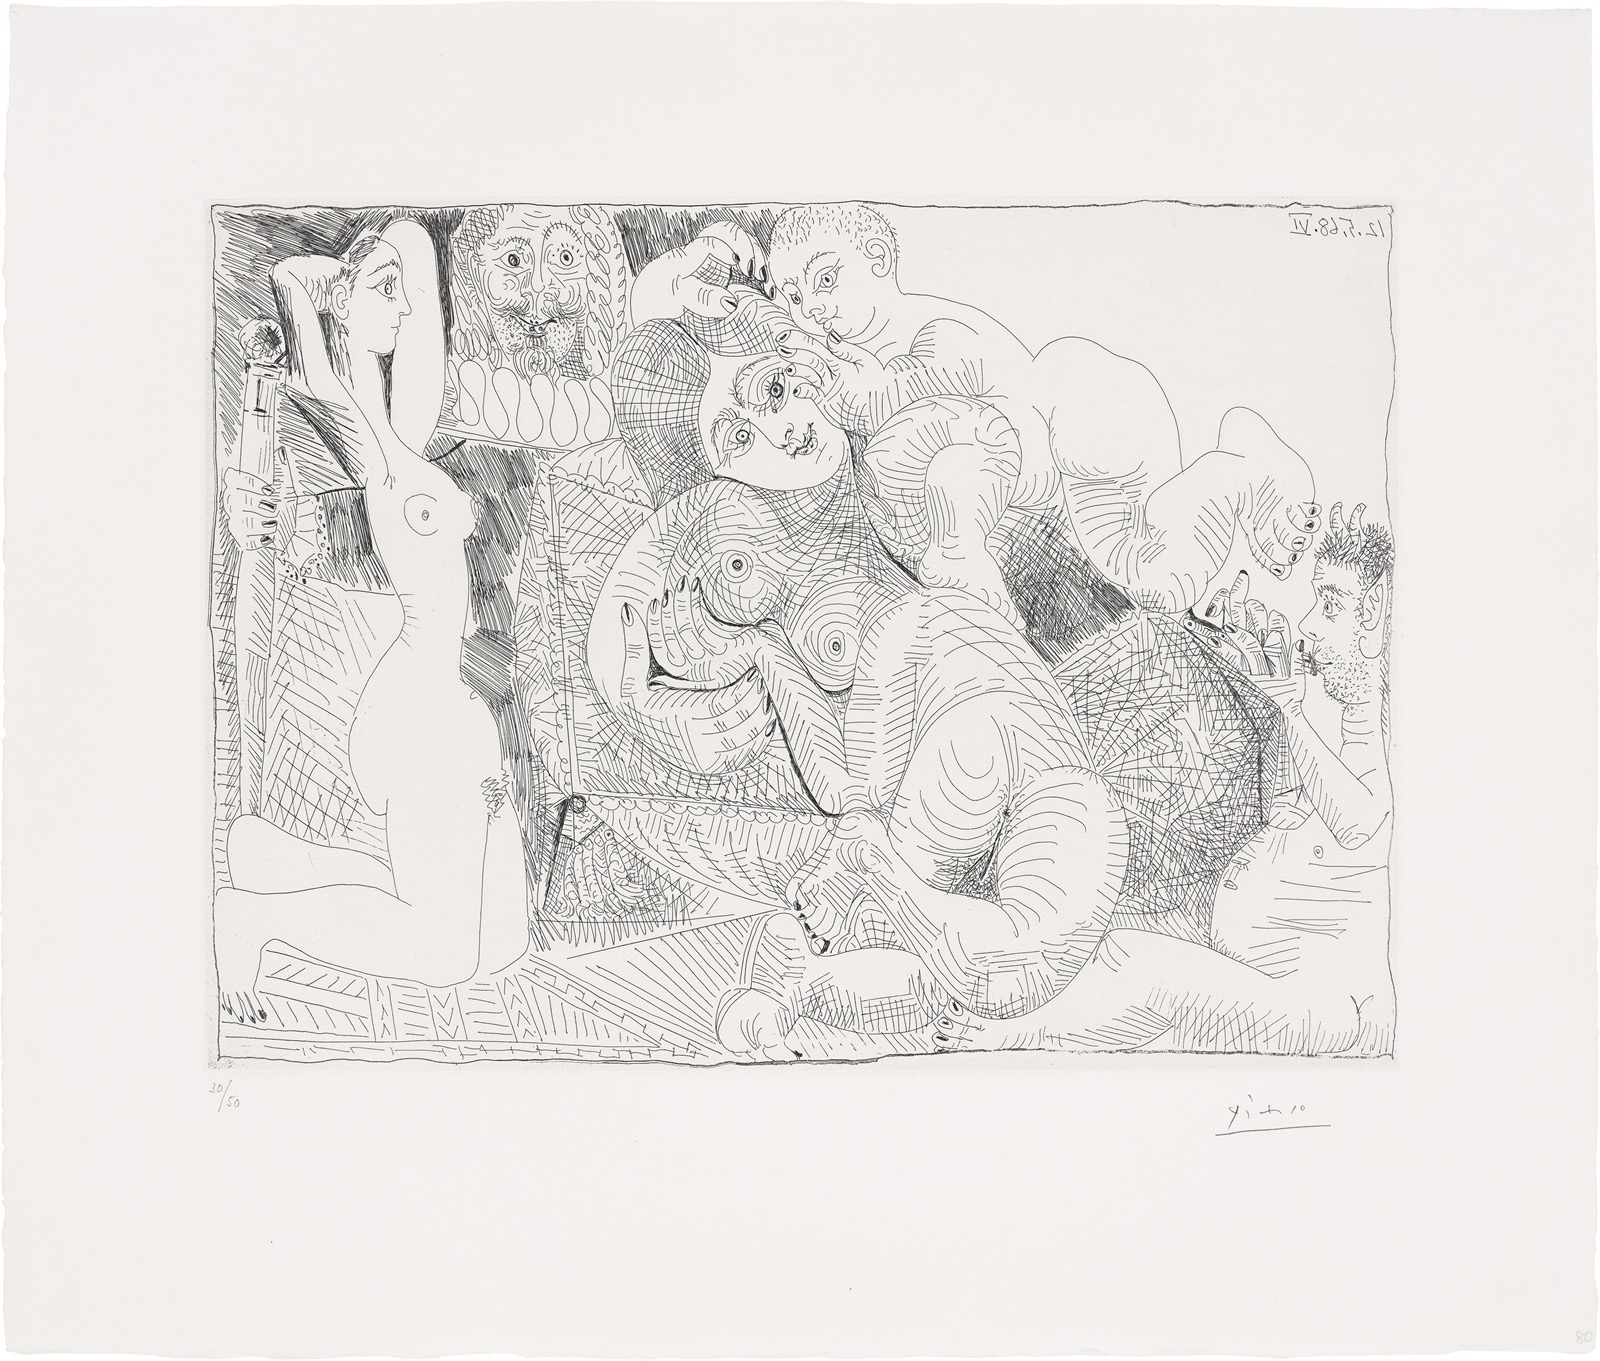 Pablo Picasso. ”La vie en rose (”Quand ... il me parle tout bas ...”)”. 1968